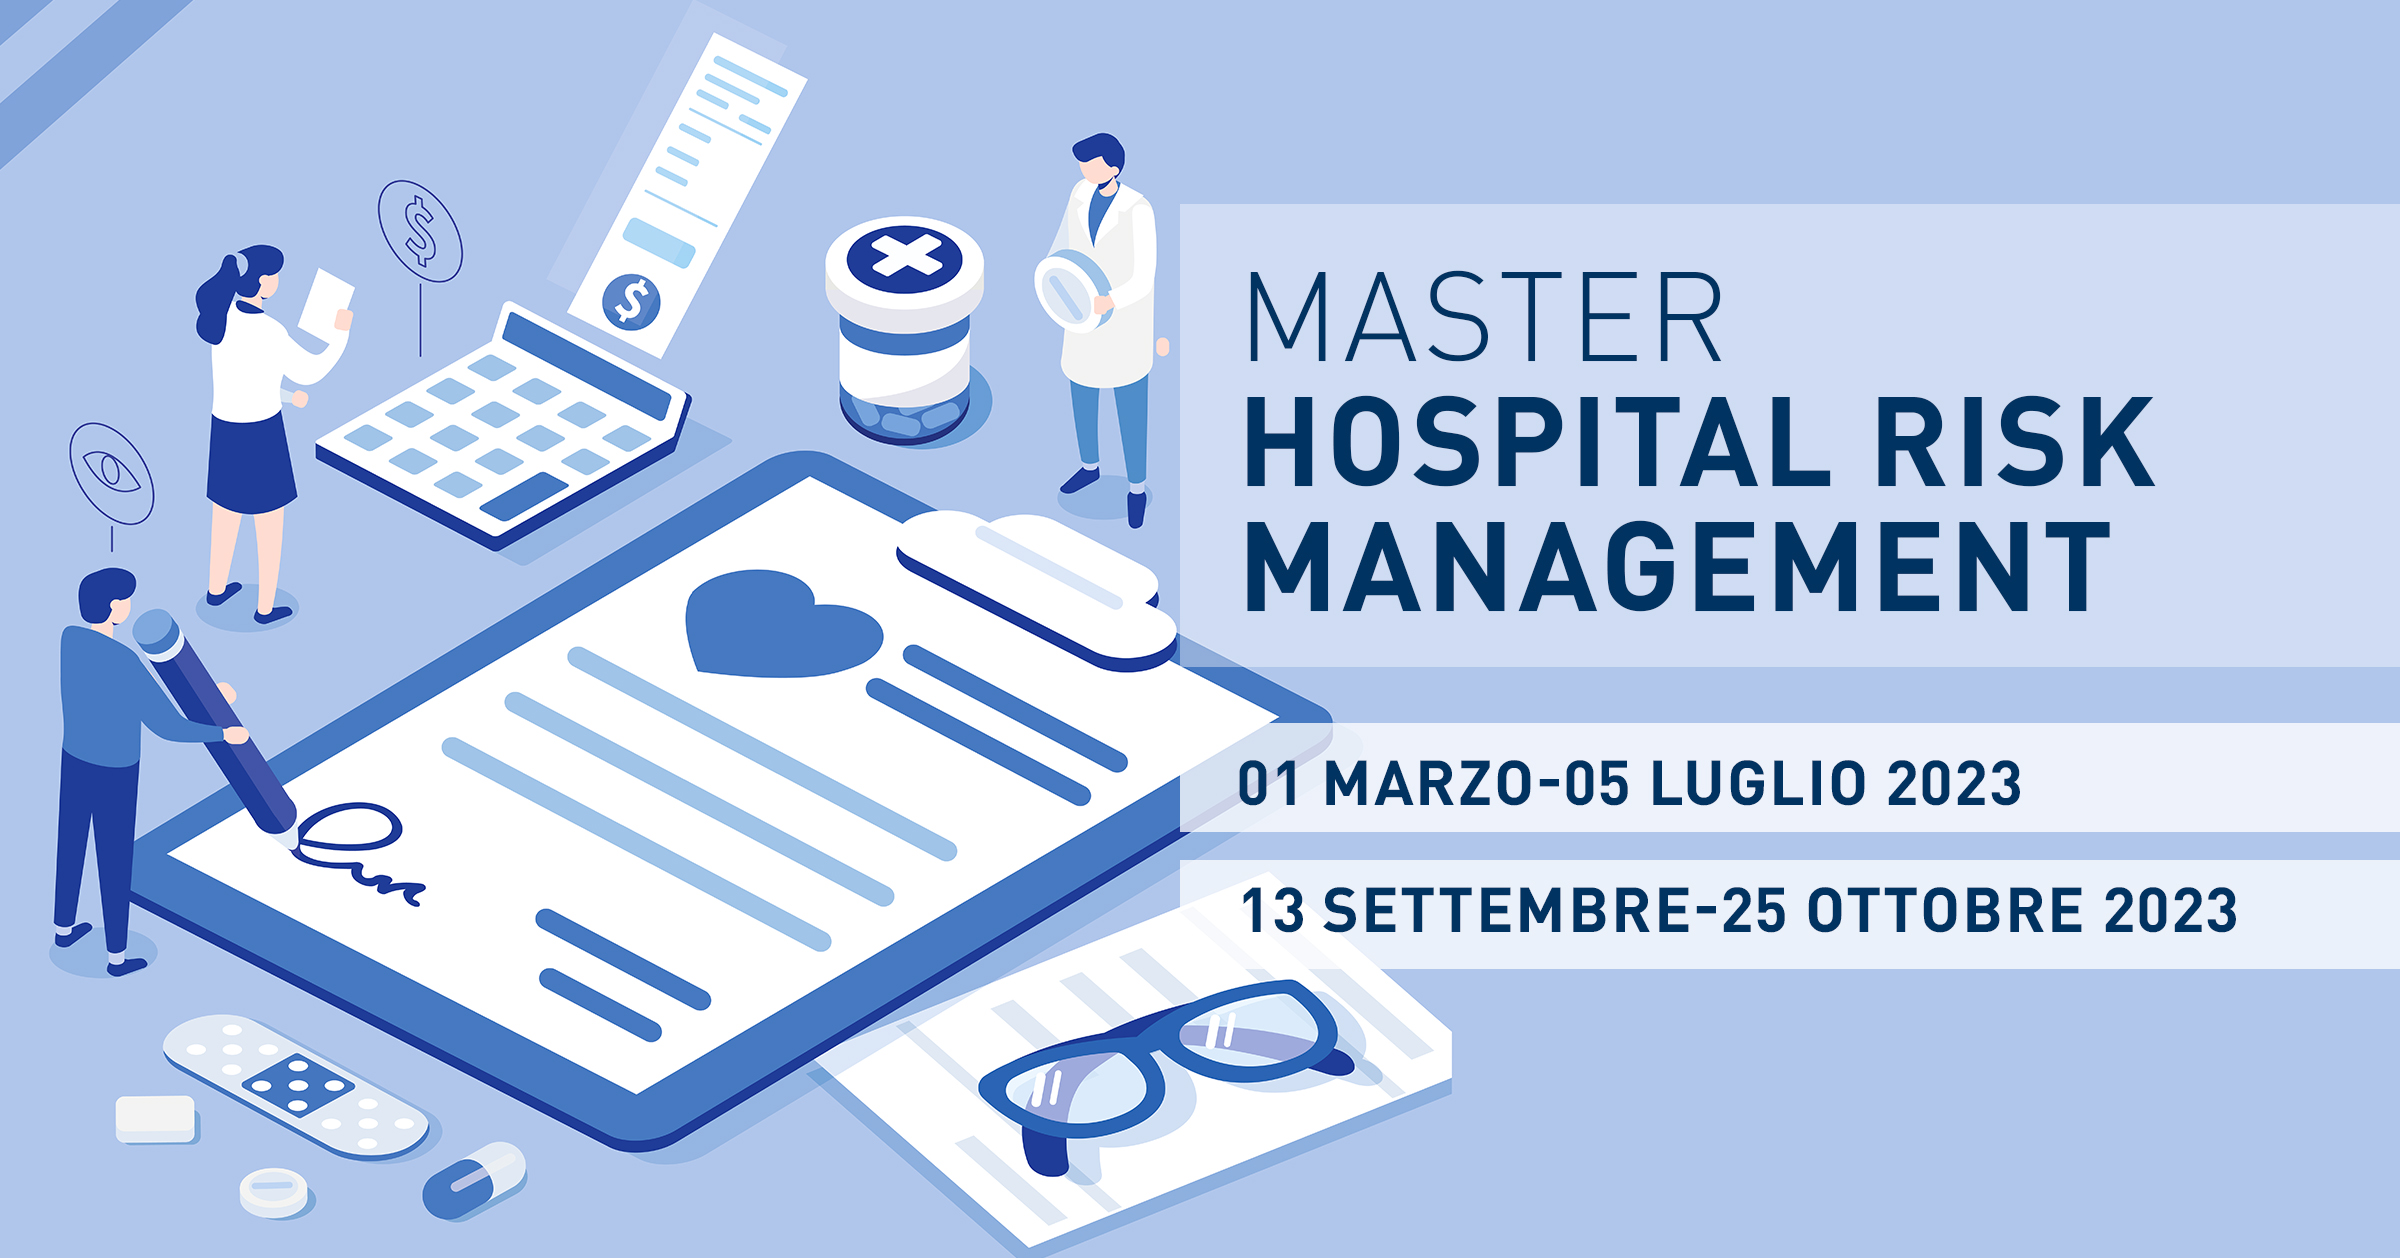 Master Hospital Risk Management